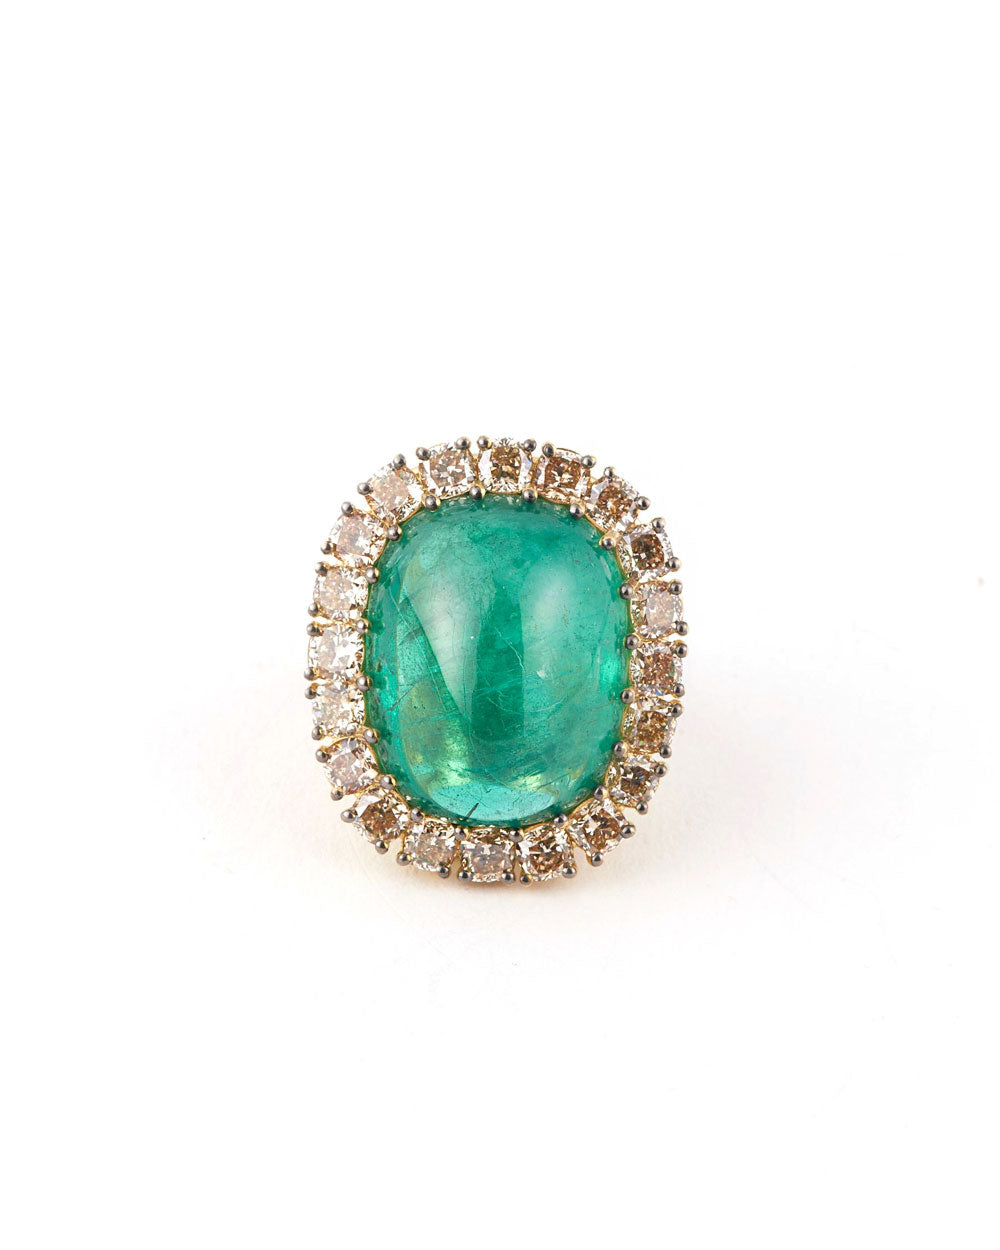 Zambian Emerald and Champagne Diamond Ring